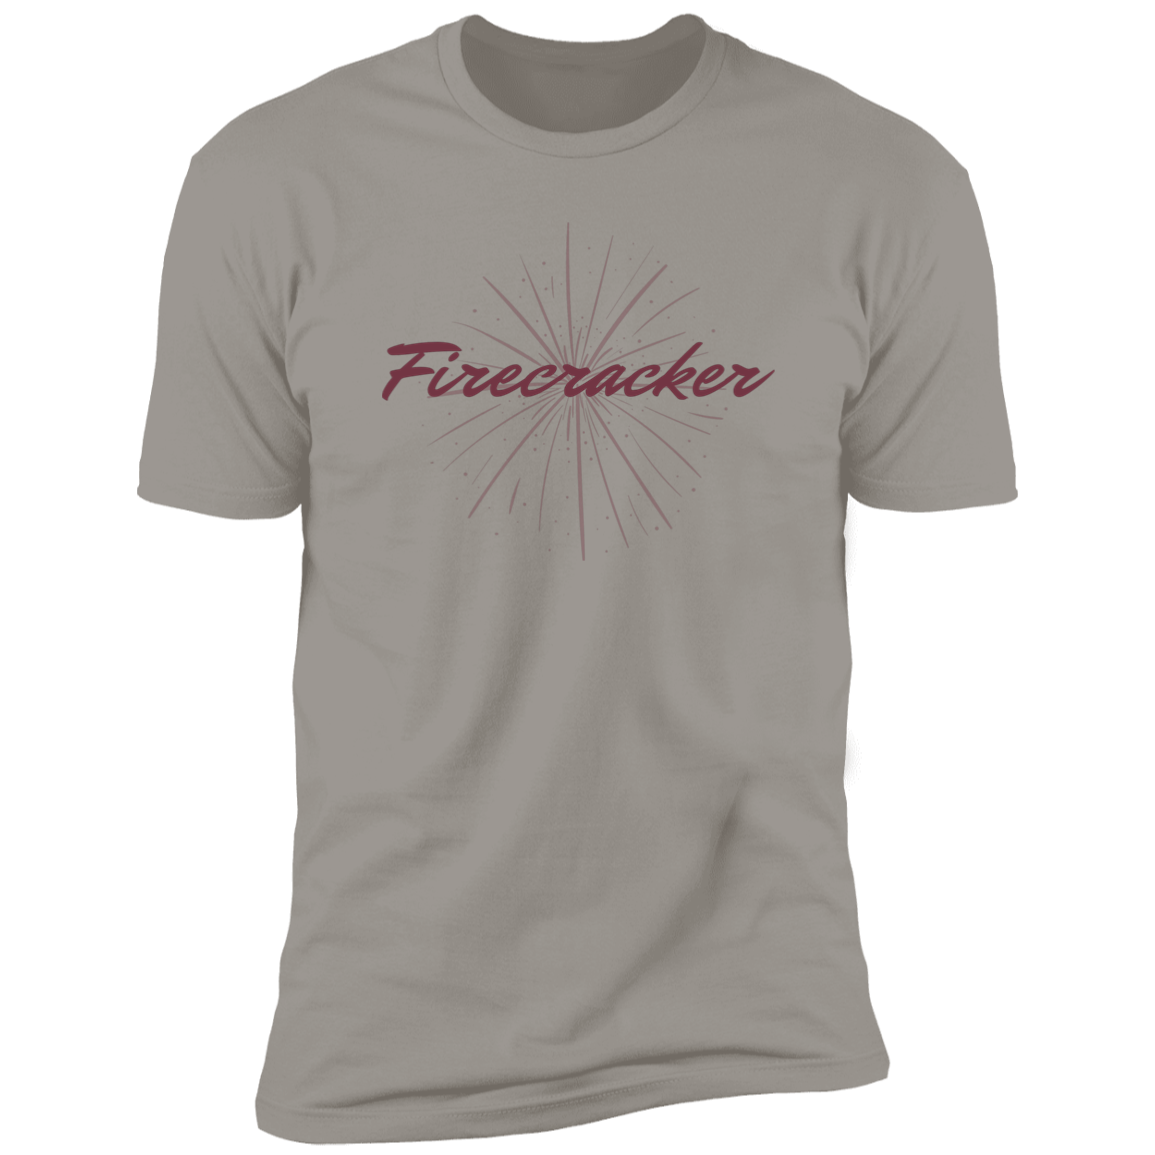 Firecracker Unisex T-shirt